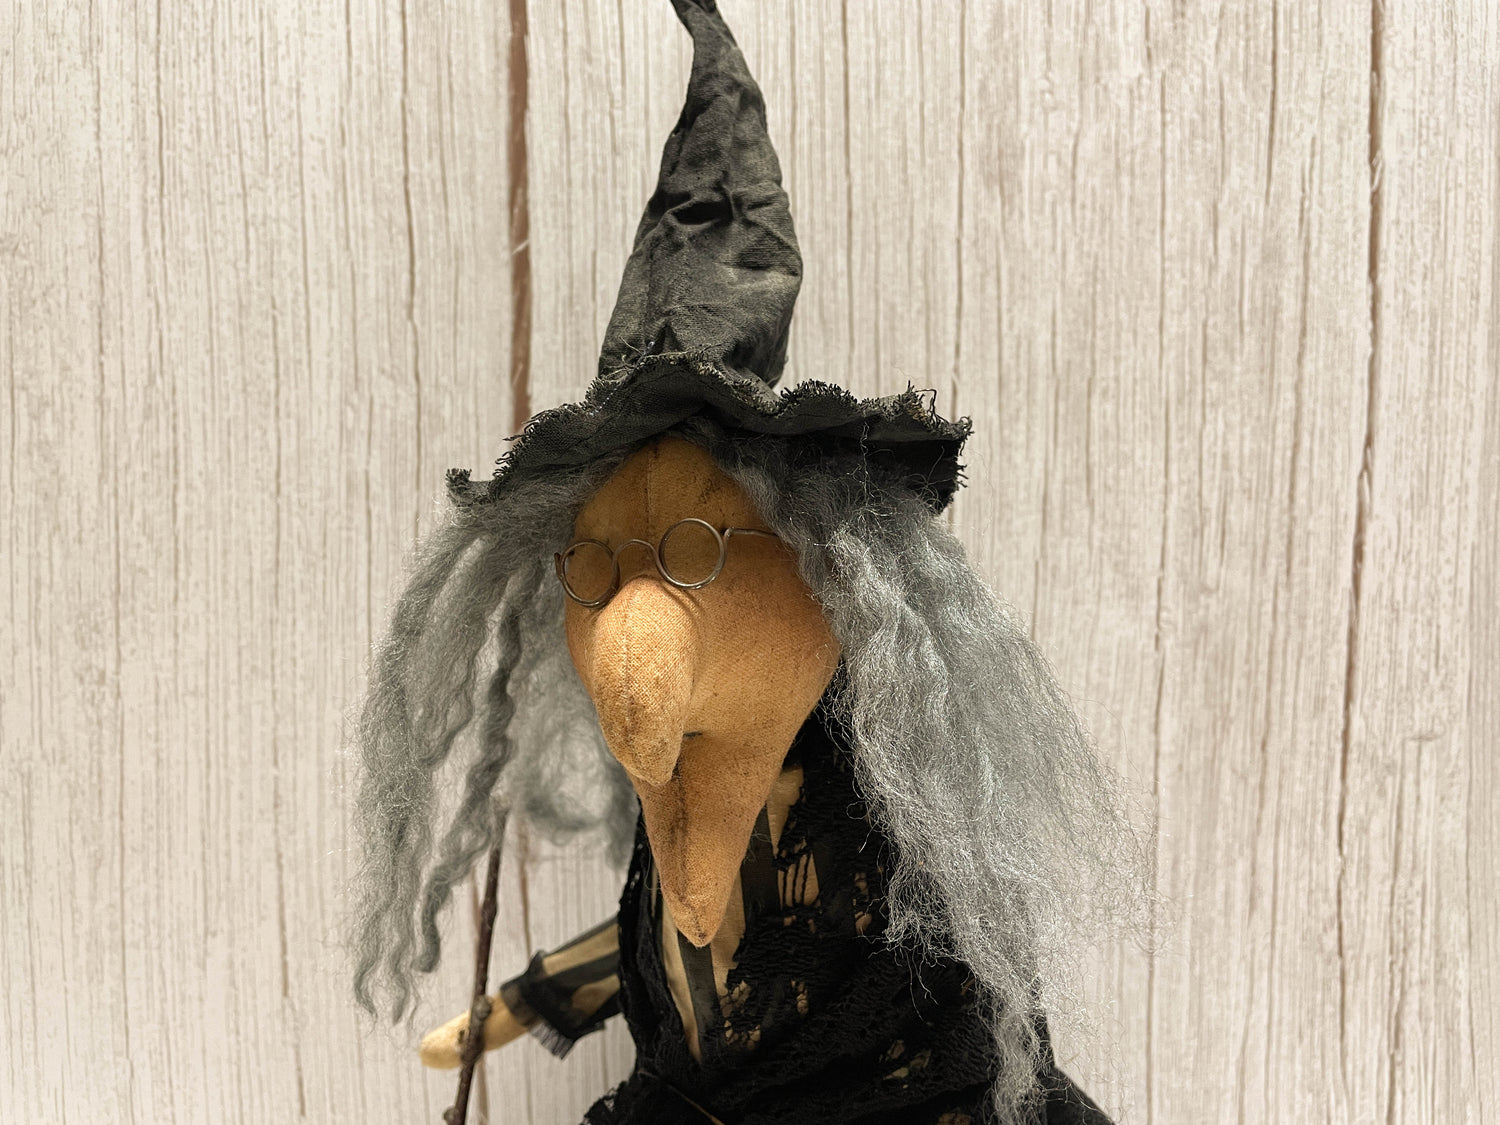 Harriet Hollows, a Halloween Witch E-pattern